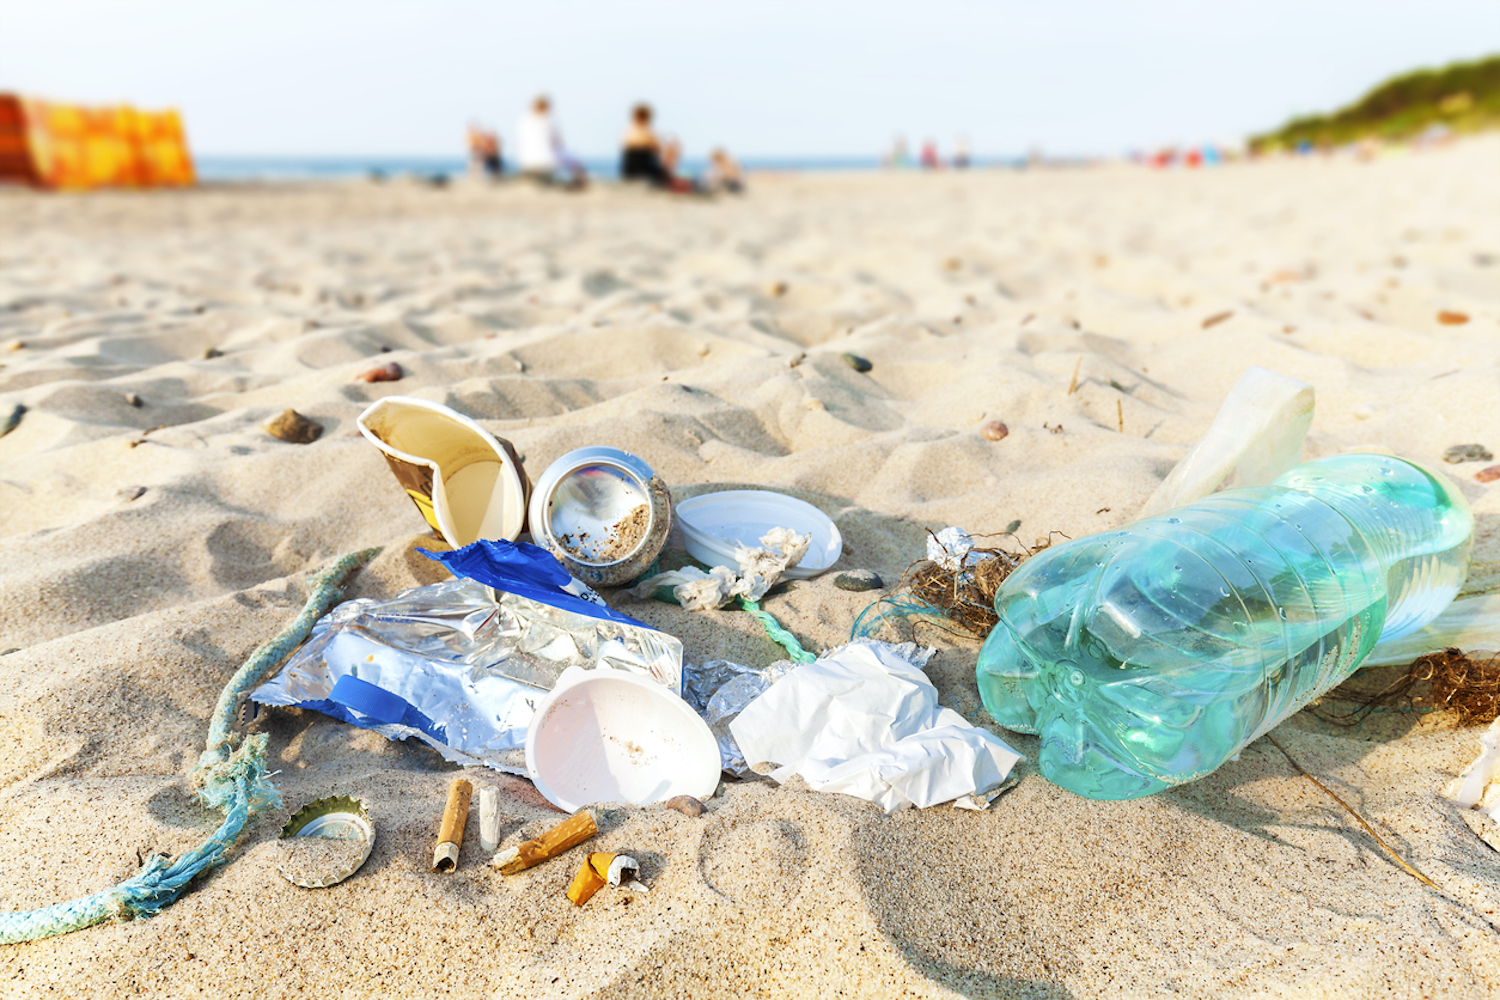 Litter-Waste-Rubbish-Trash-Garbage-Refuse-Beach